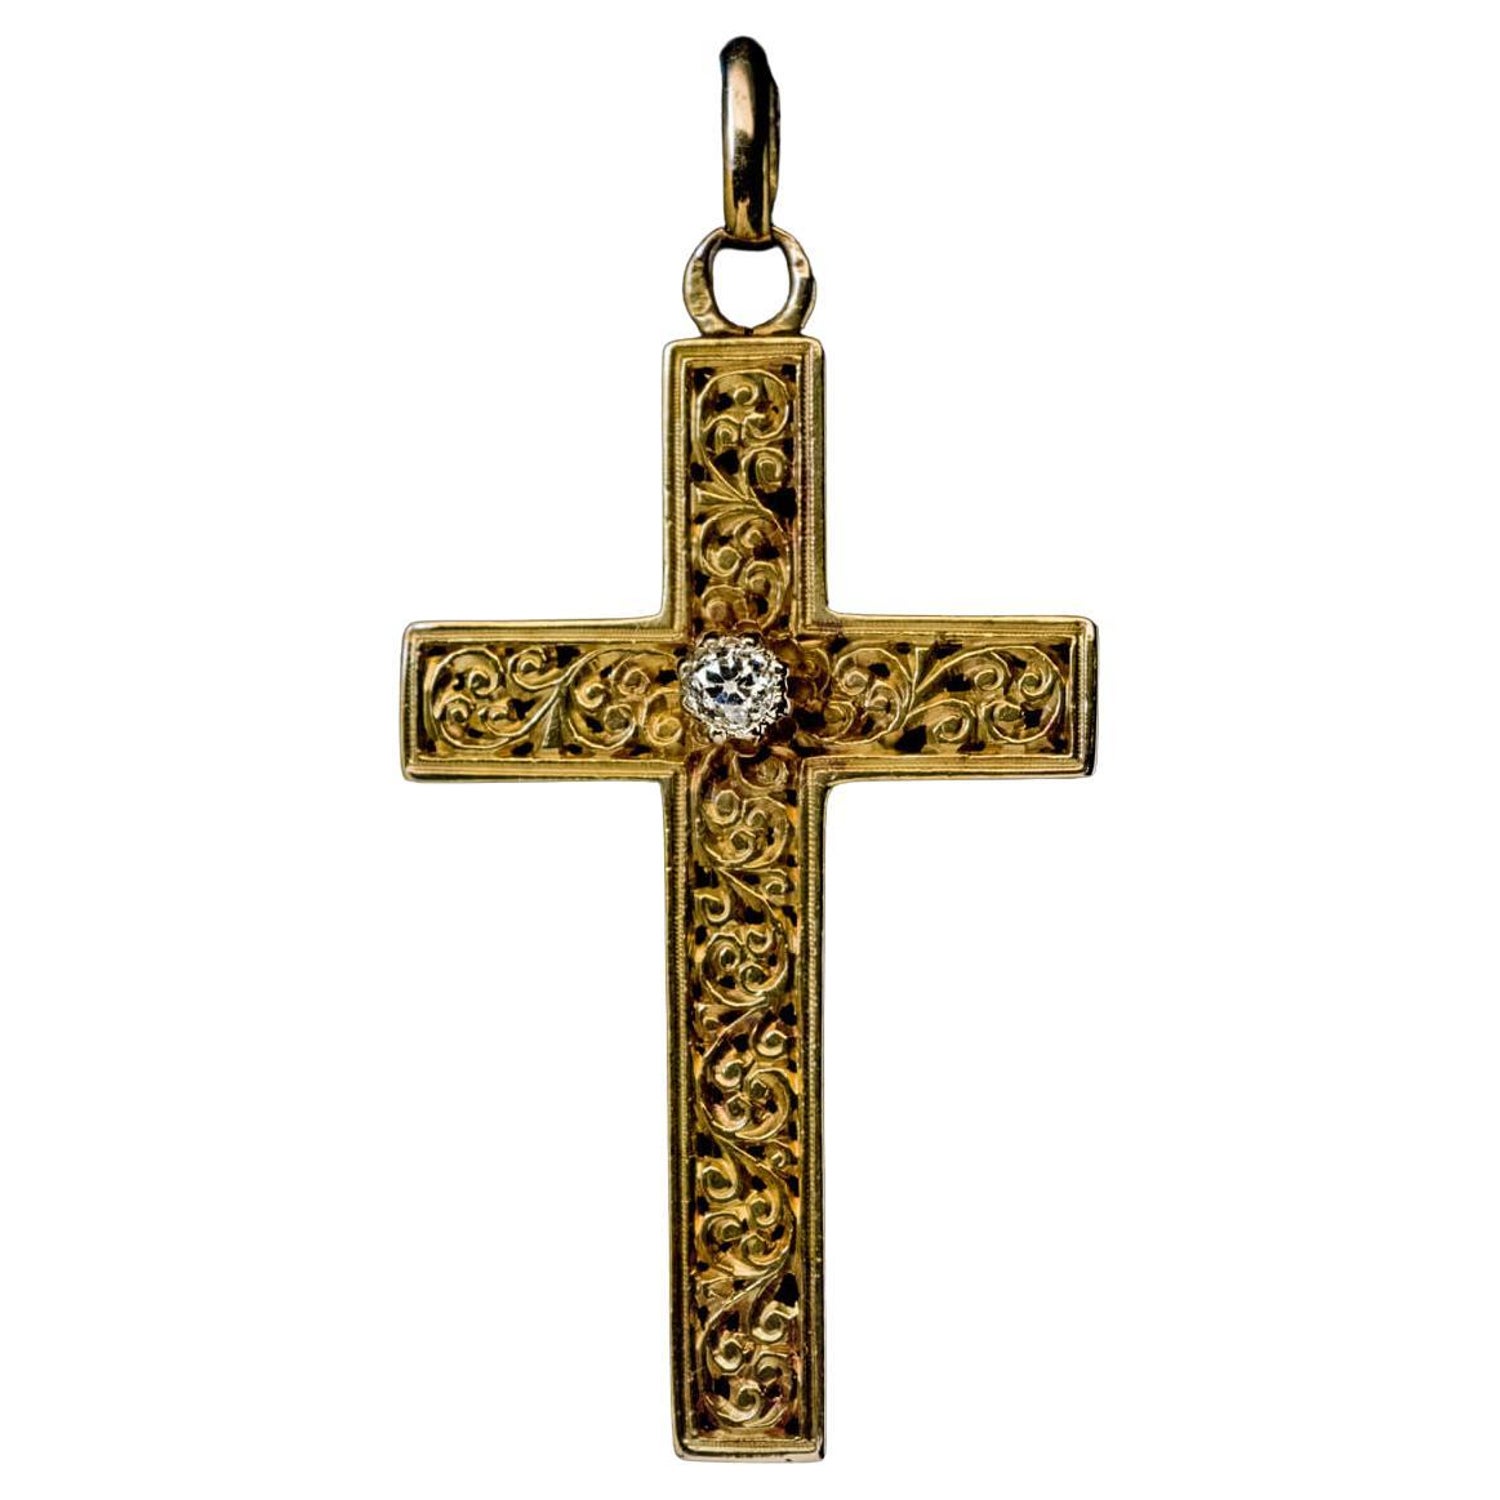 Blue Flower 3D Print Cross Necklace Zinc Alloy Pendant Religious Jewelry Pendant 